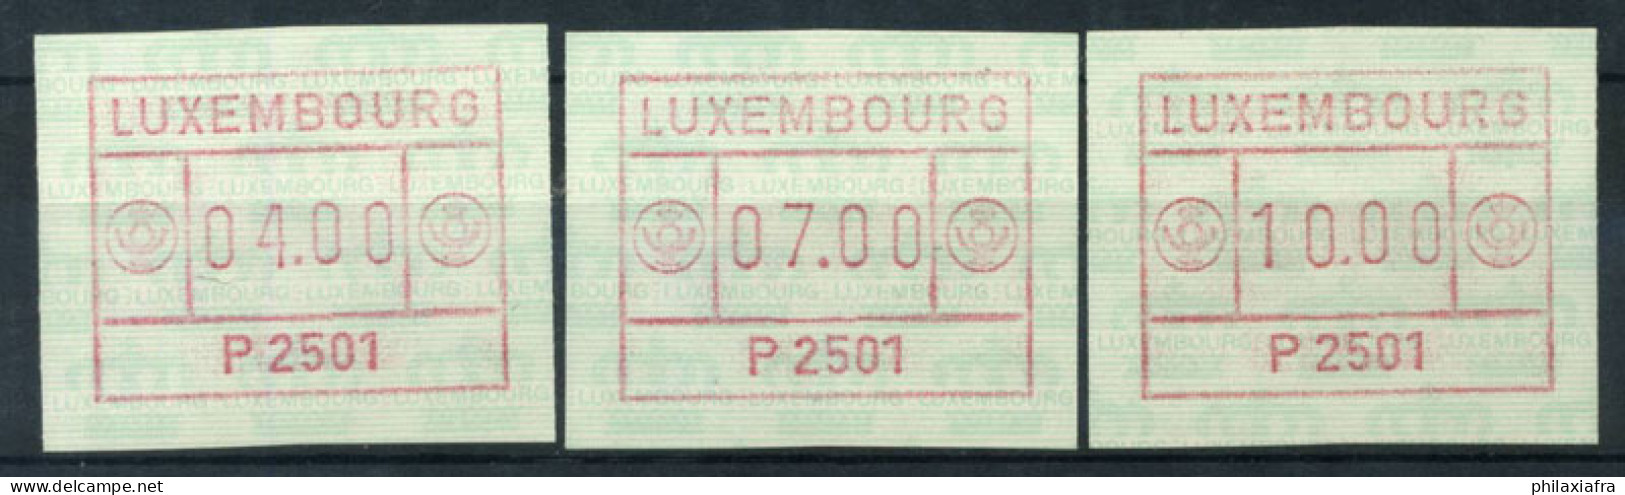 Luxembourg 1983 Mi. 1 Neuf ** 100% ATM 4.00/7.00/10.00 - Vignettes D'affranchissement